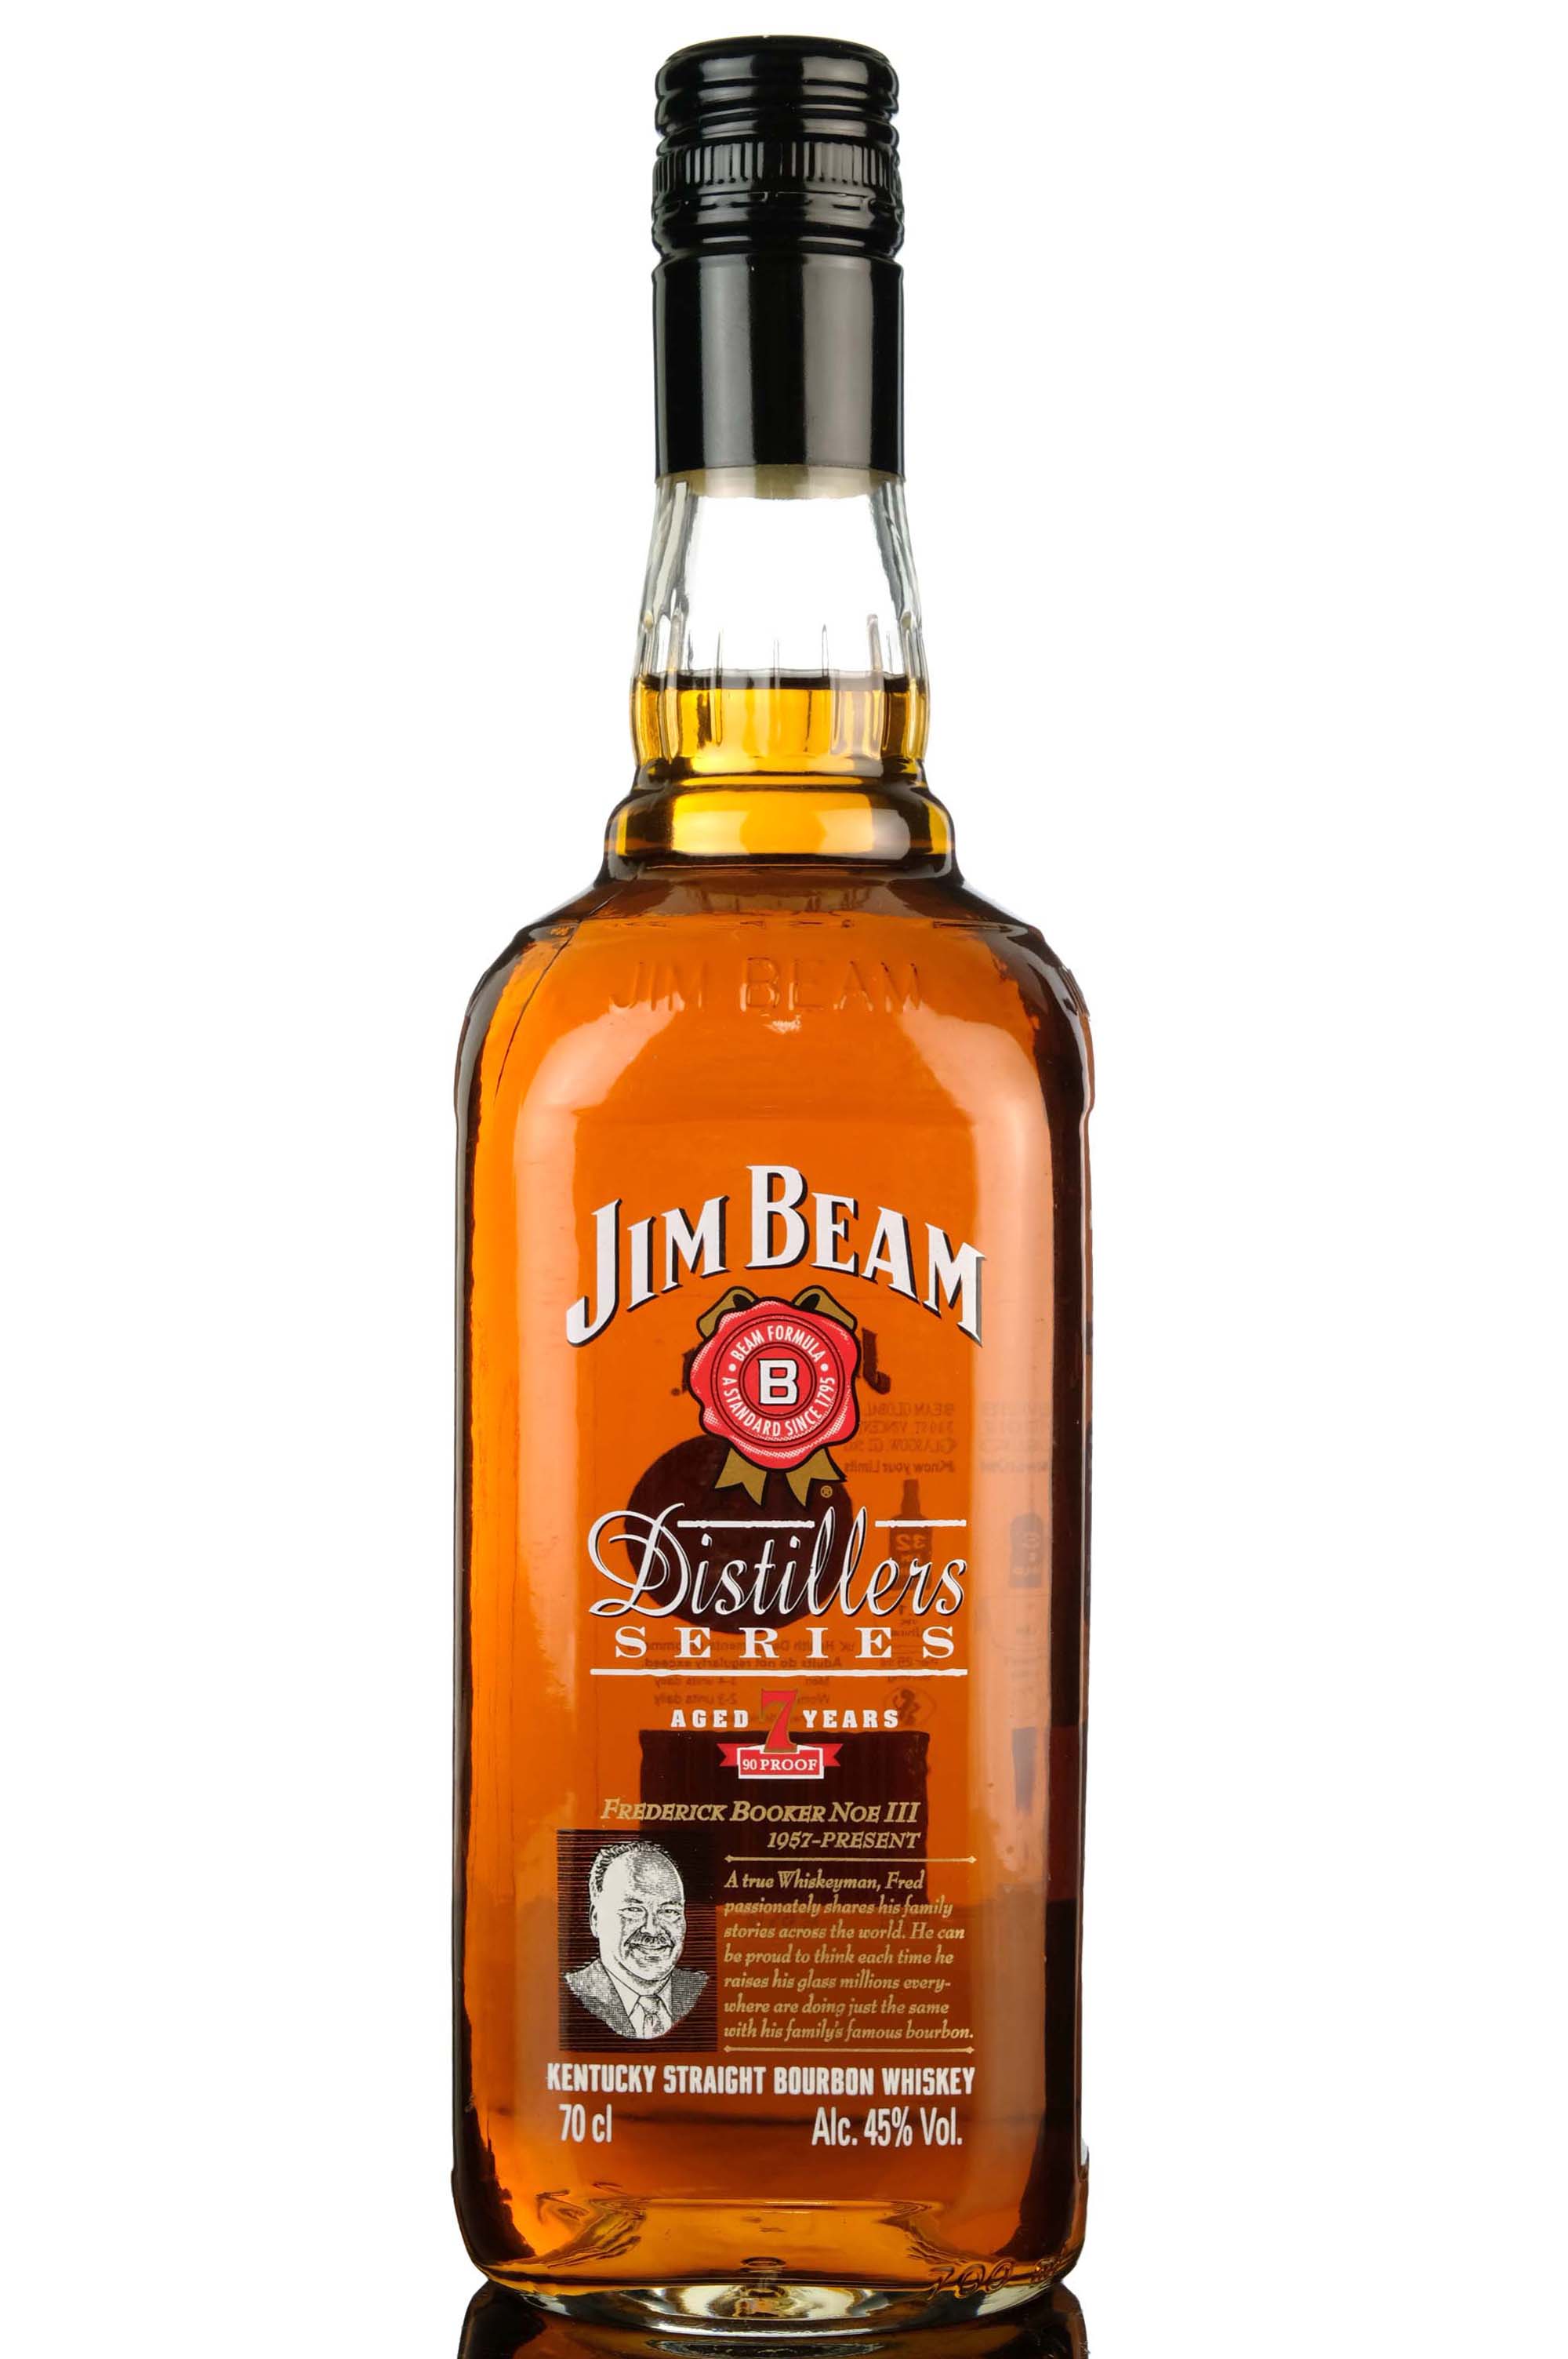 Jim Beam 7 Year Old - Distillers Series - 2008 Release